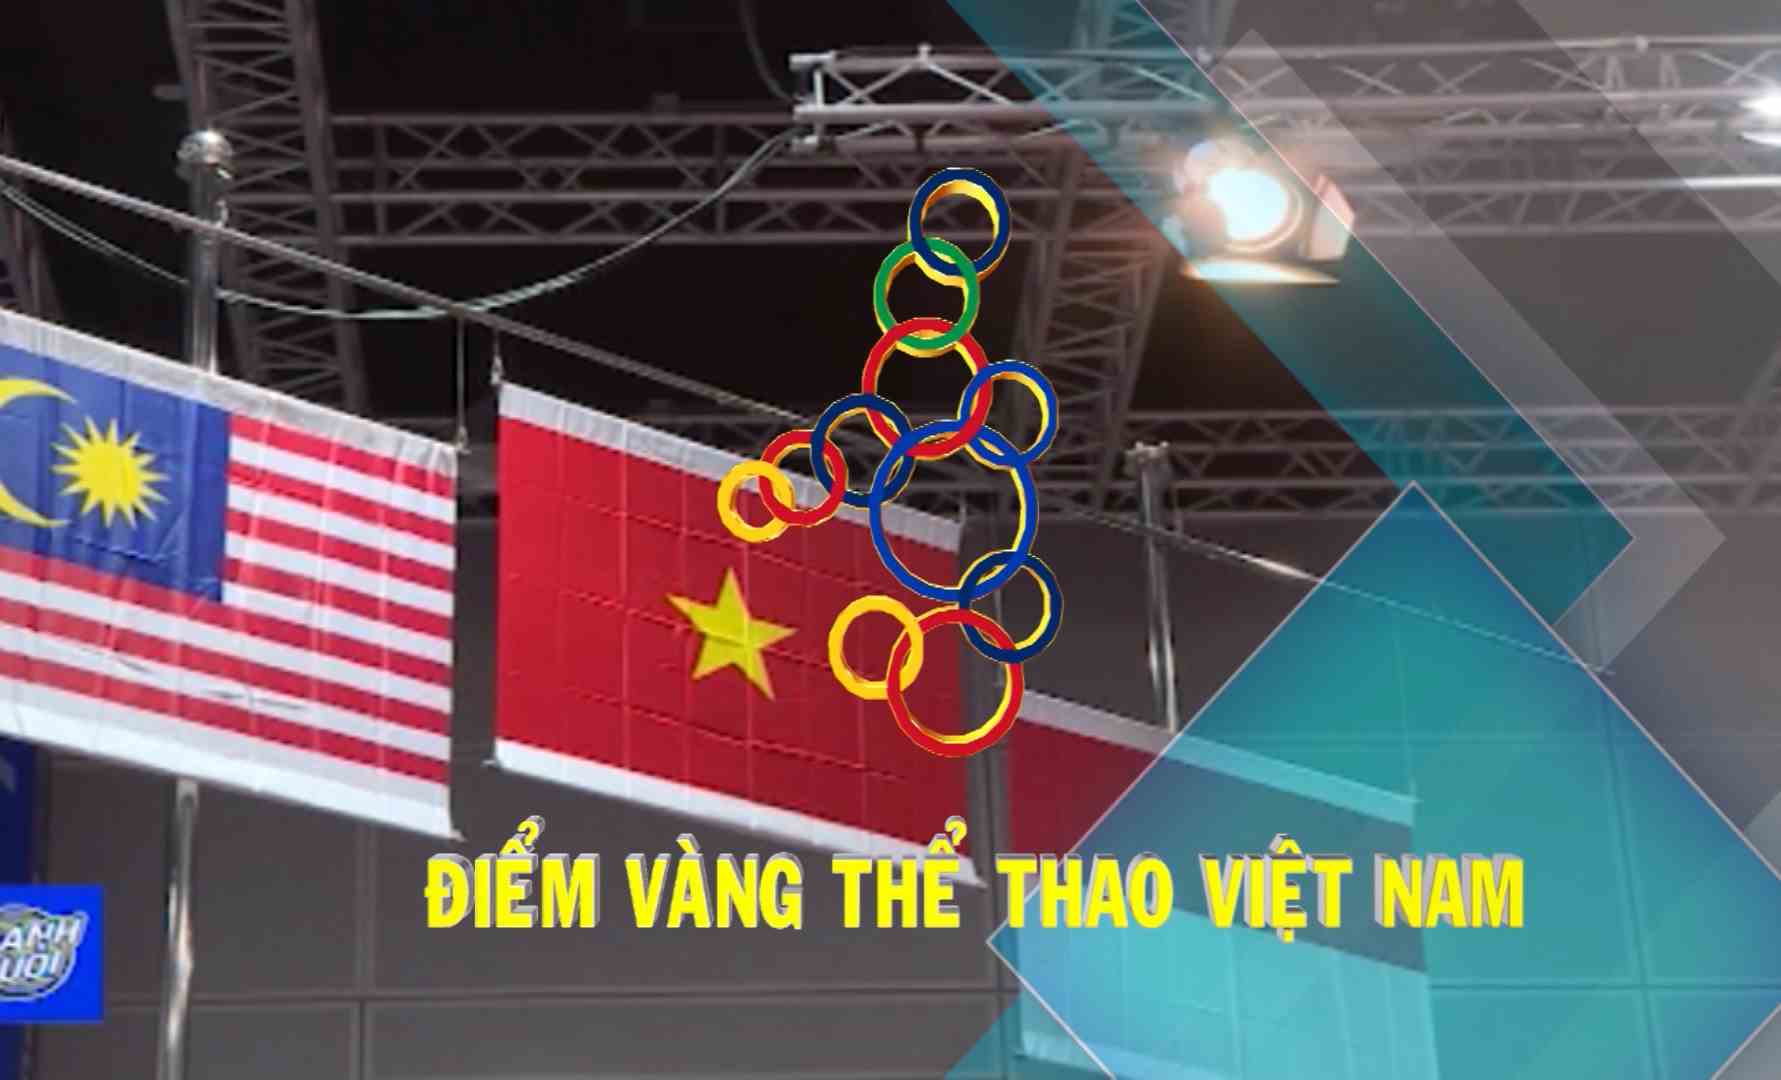 [Video] Điểm vàng thể thao Việt Nam (10-12-2019)